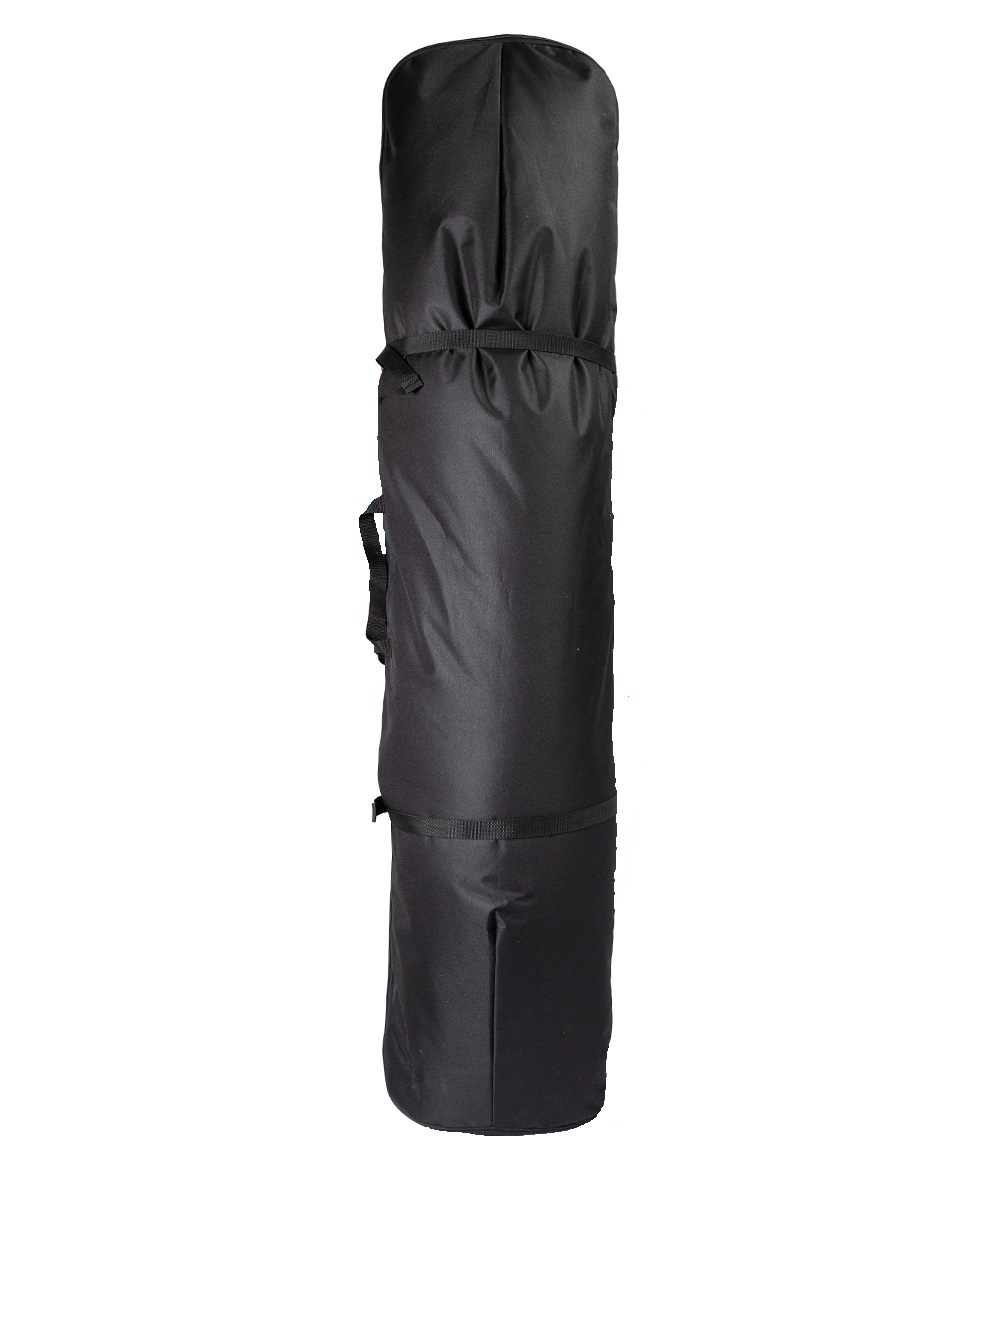 Чехол для сноуборда Рюкзак длина 155 см цвет чёрный